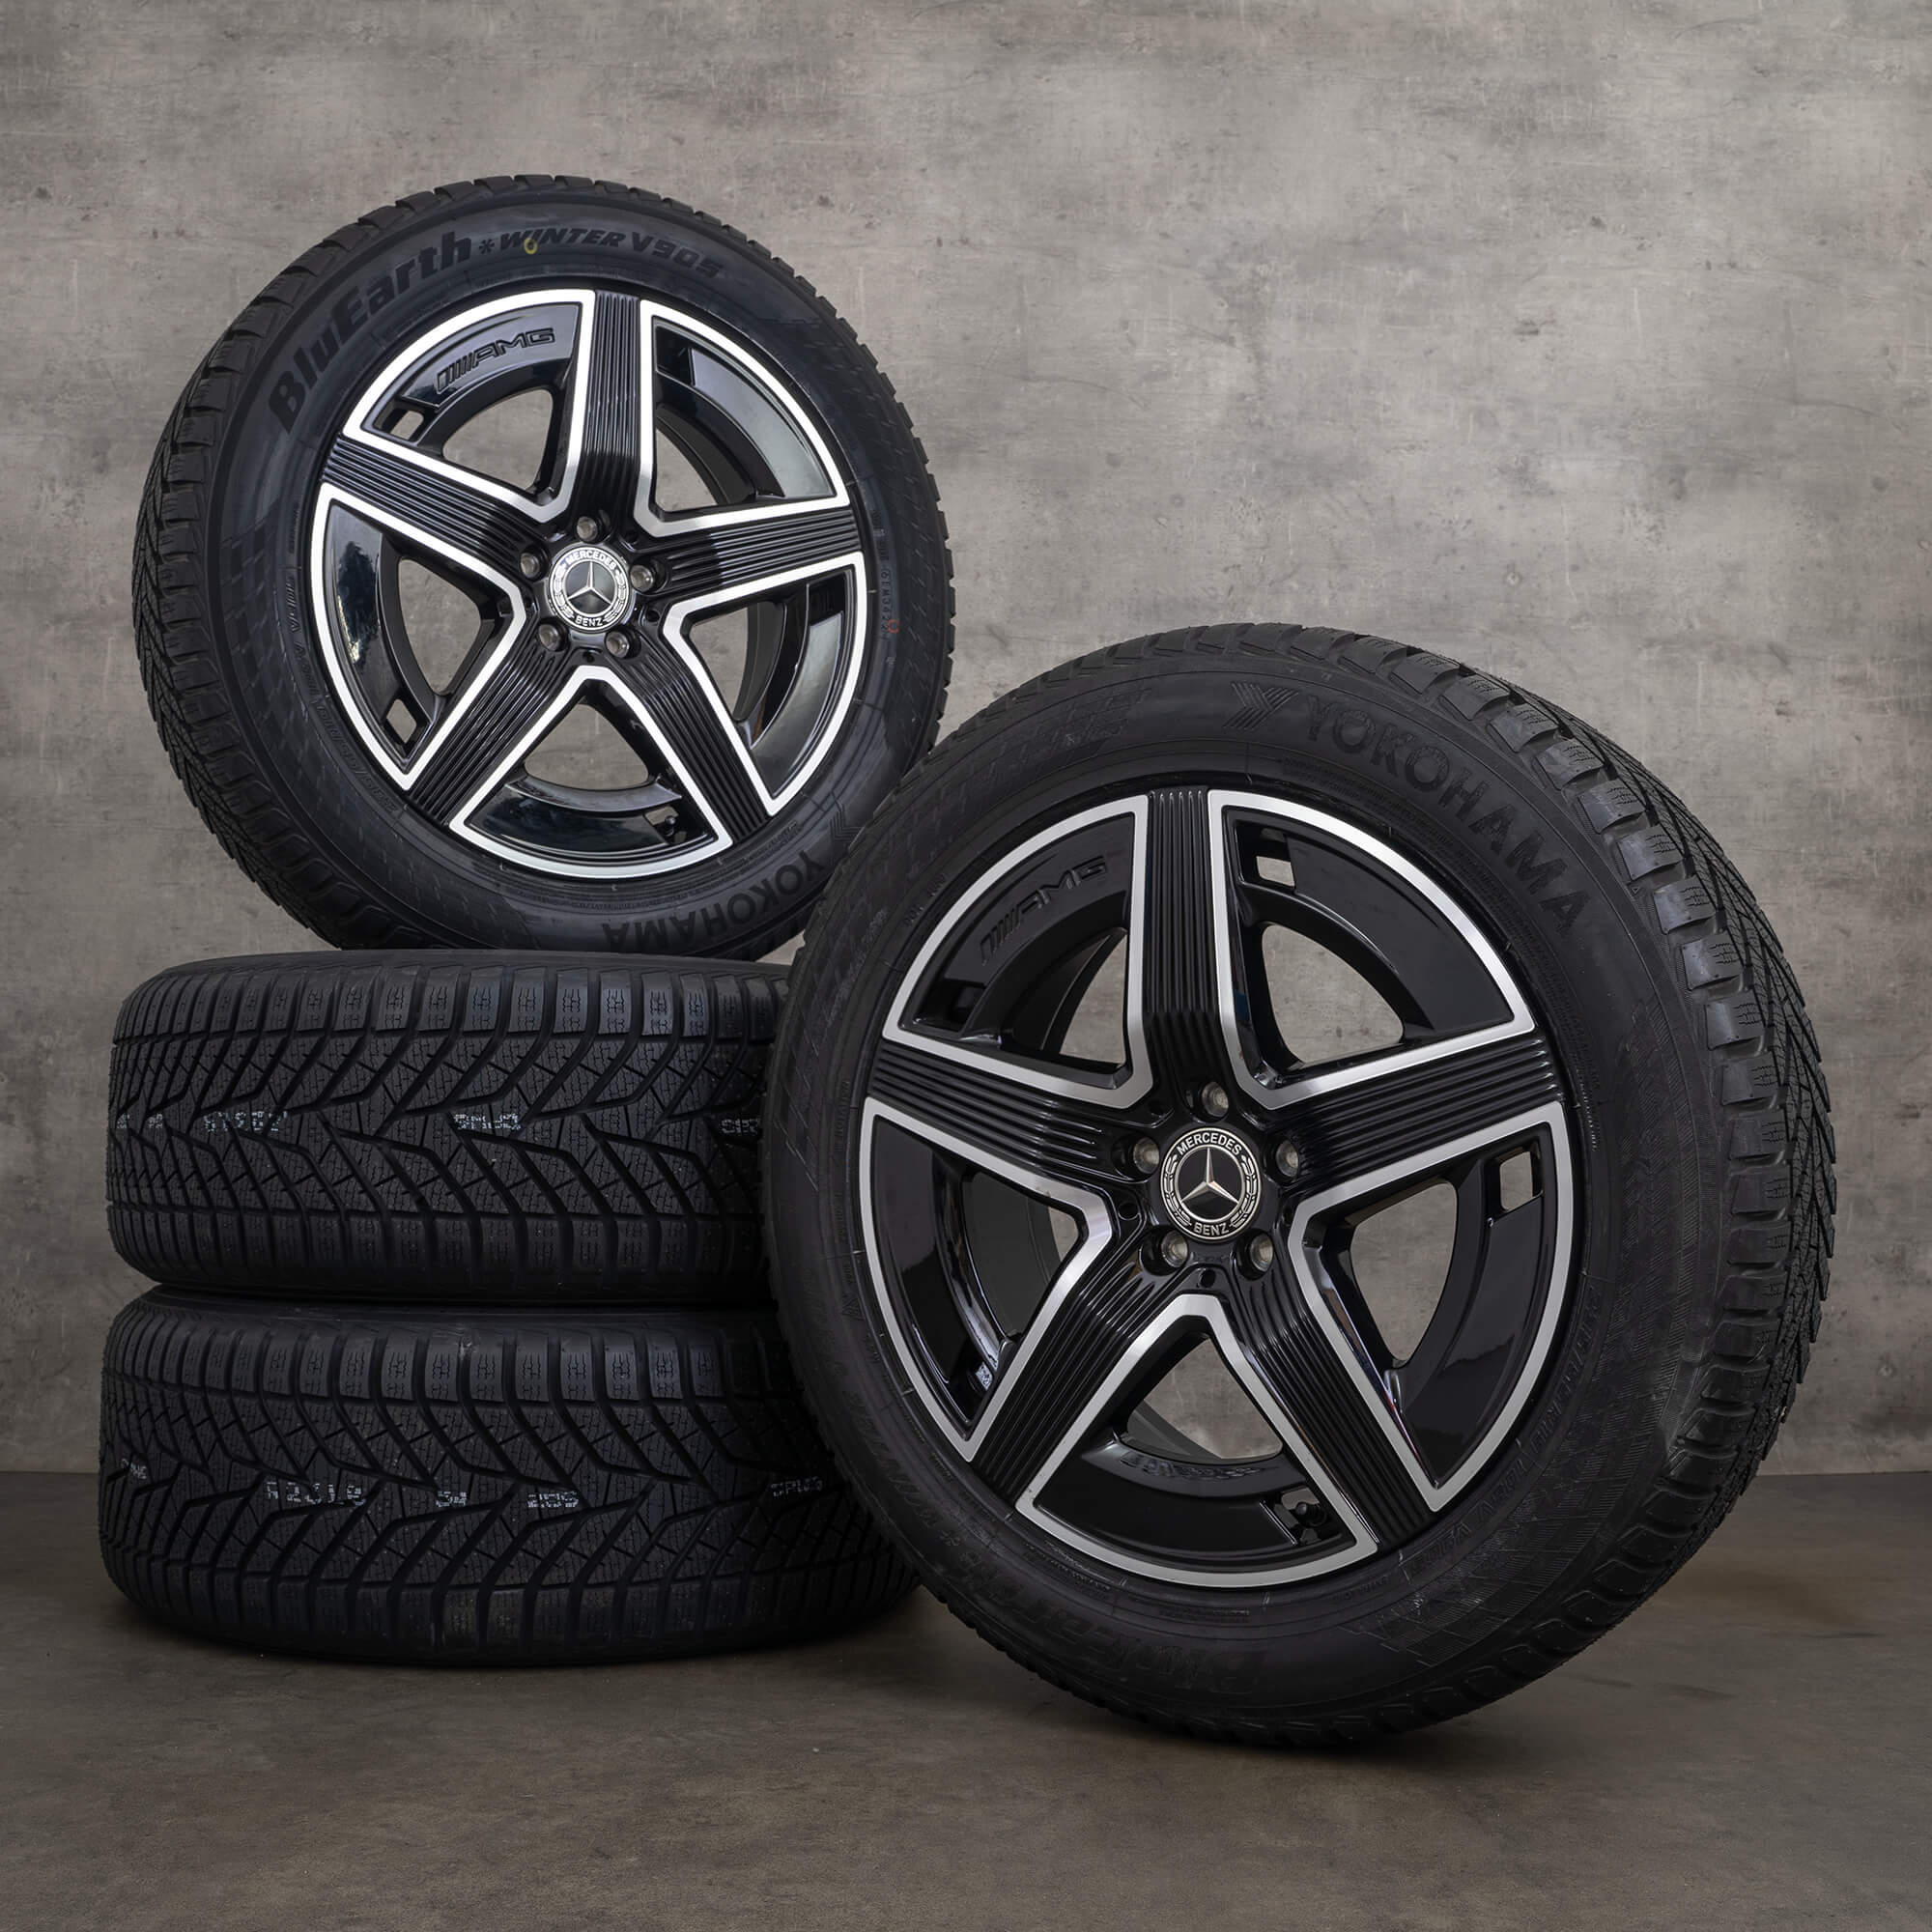 Jantes originais Mercedes Benz GLC C254 pneus de inverno 19 polegadas jantes alumínio rodas A2544010400 A2544010500 preto alto brilho